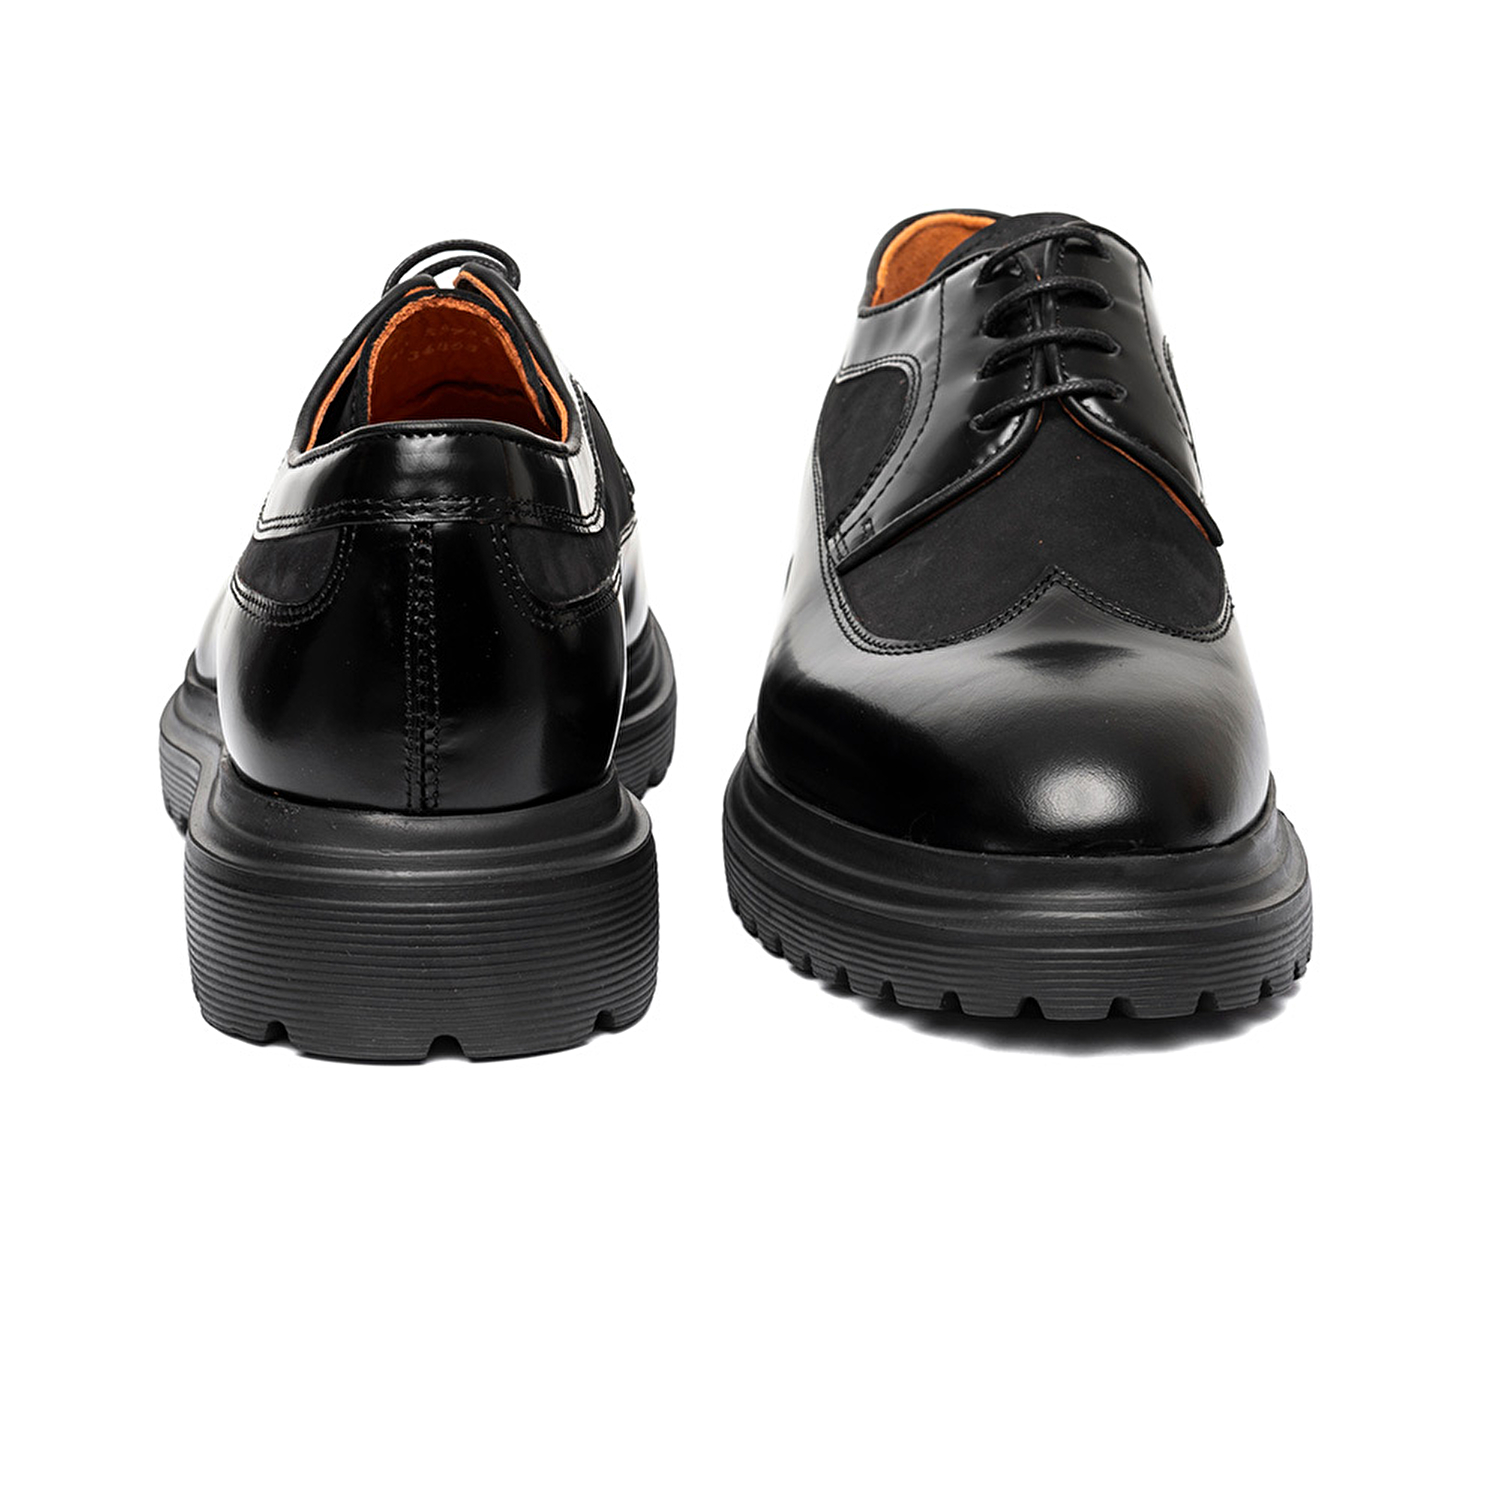 Erkek Siyah Hakiki Deri Klasik Ayakkabı 3K1KA16320-6